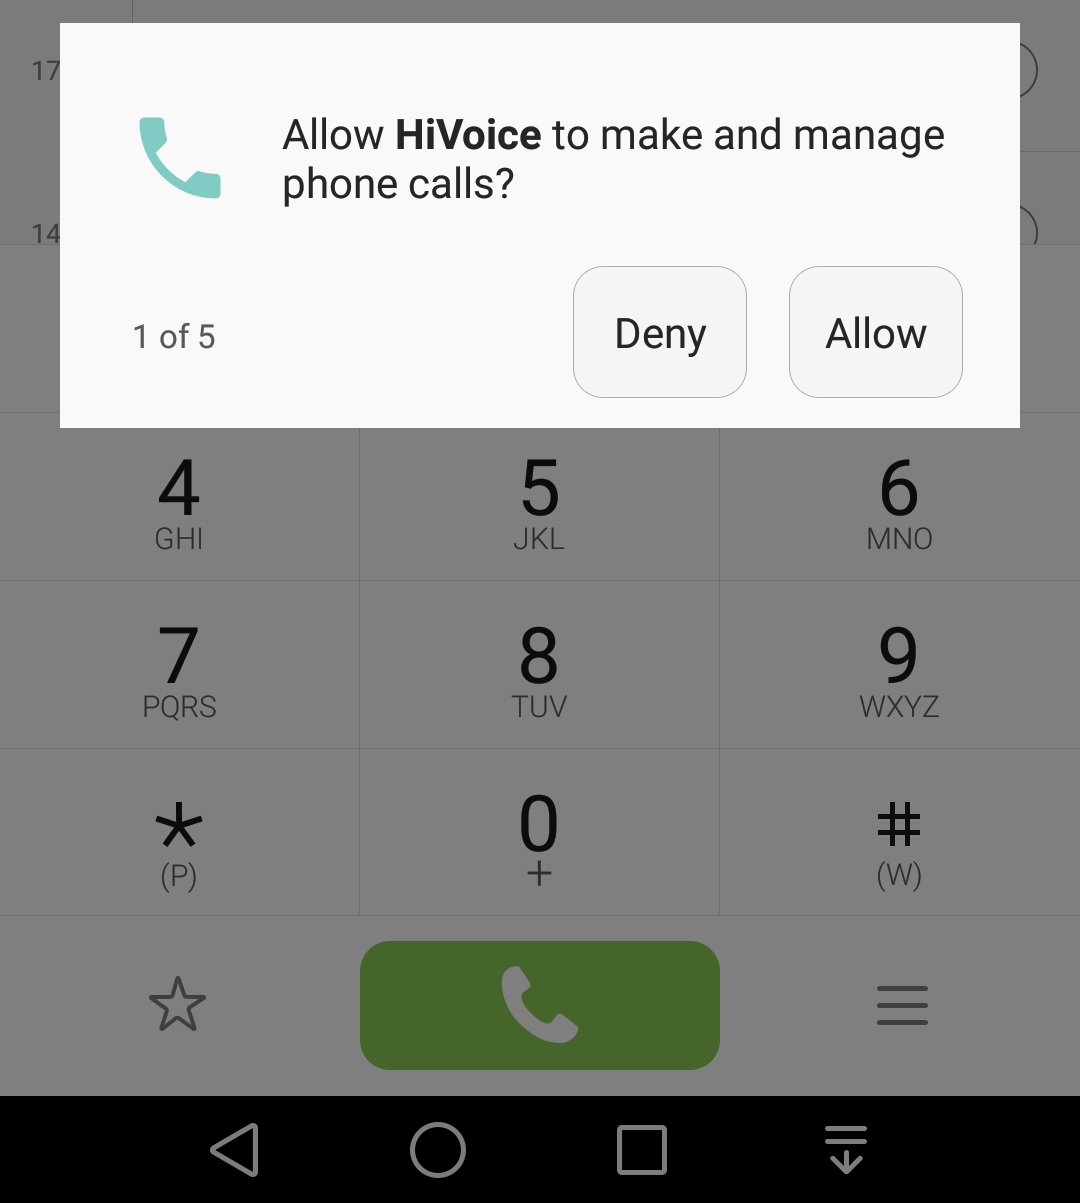 HiVoice от компании Huawei — это приложение, которое позволяет распознавать голос пользователя С помощью этого приложения и голосовых команд можно управлять